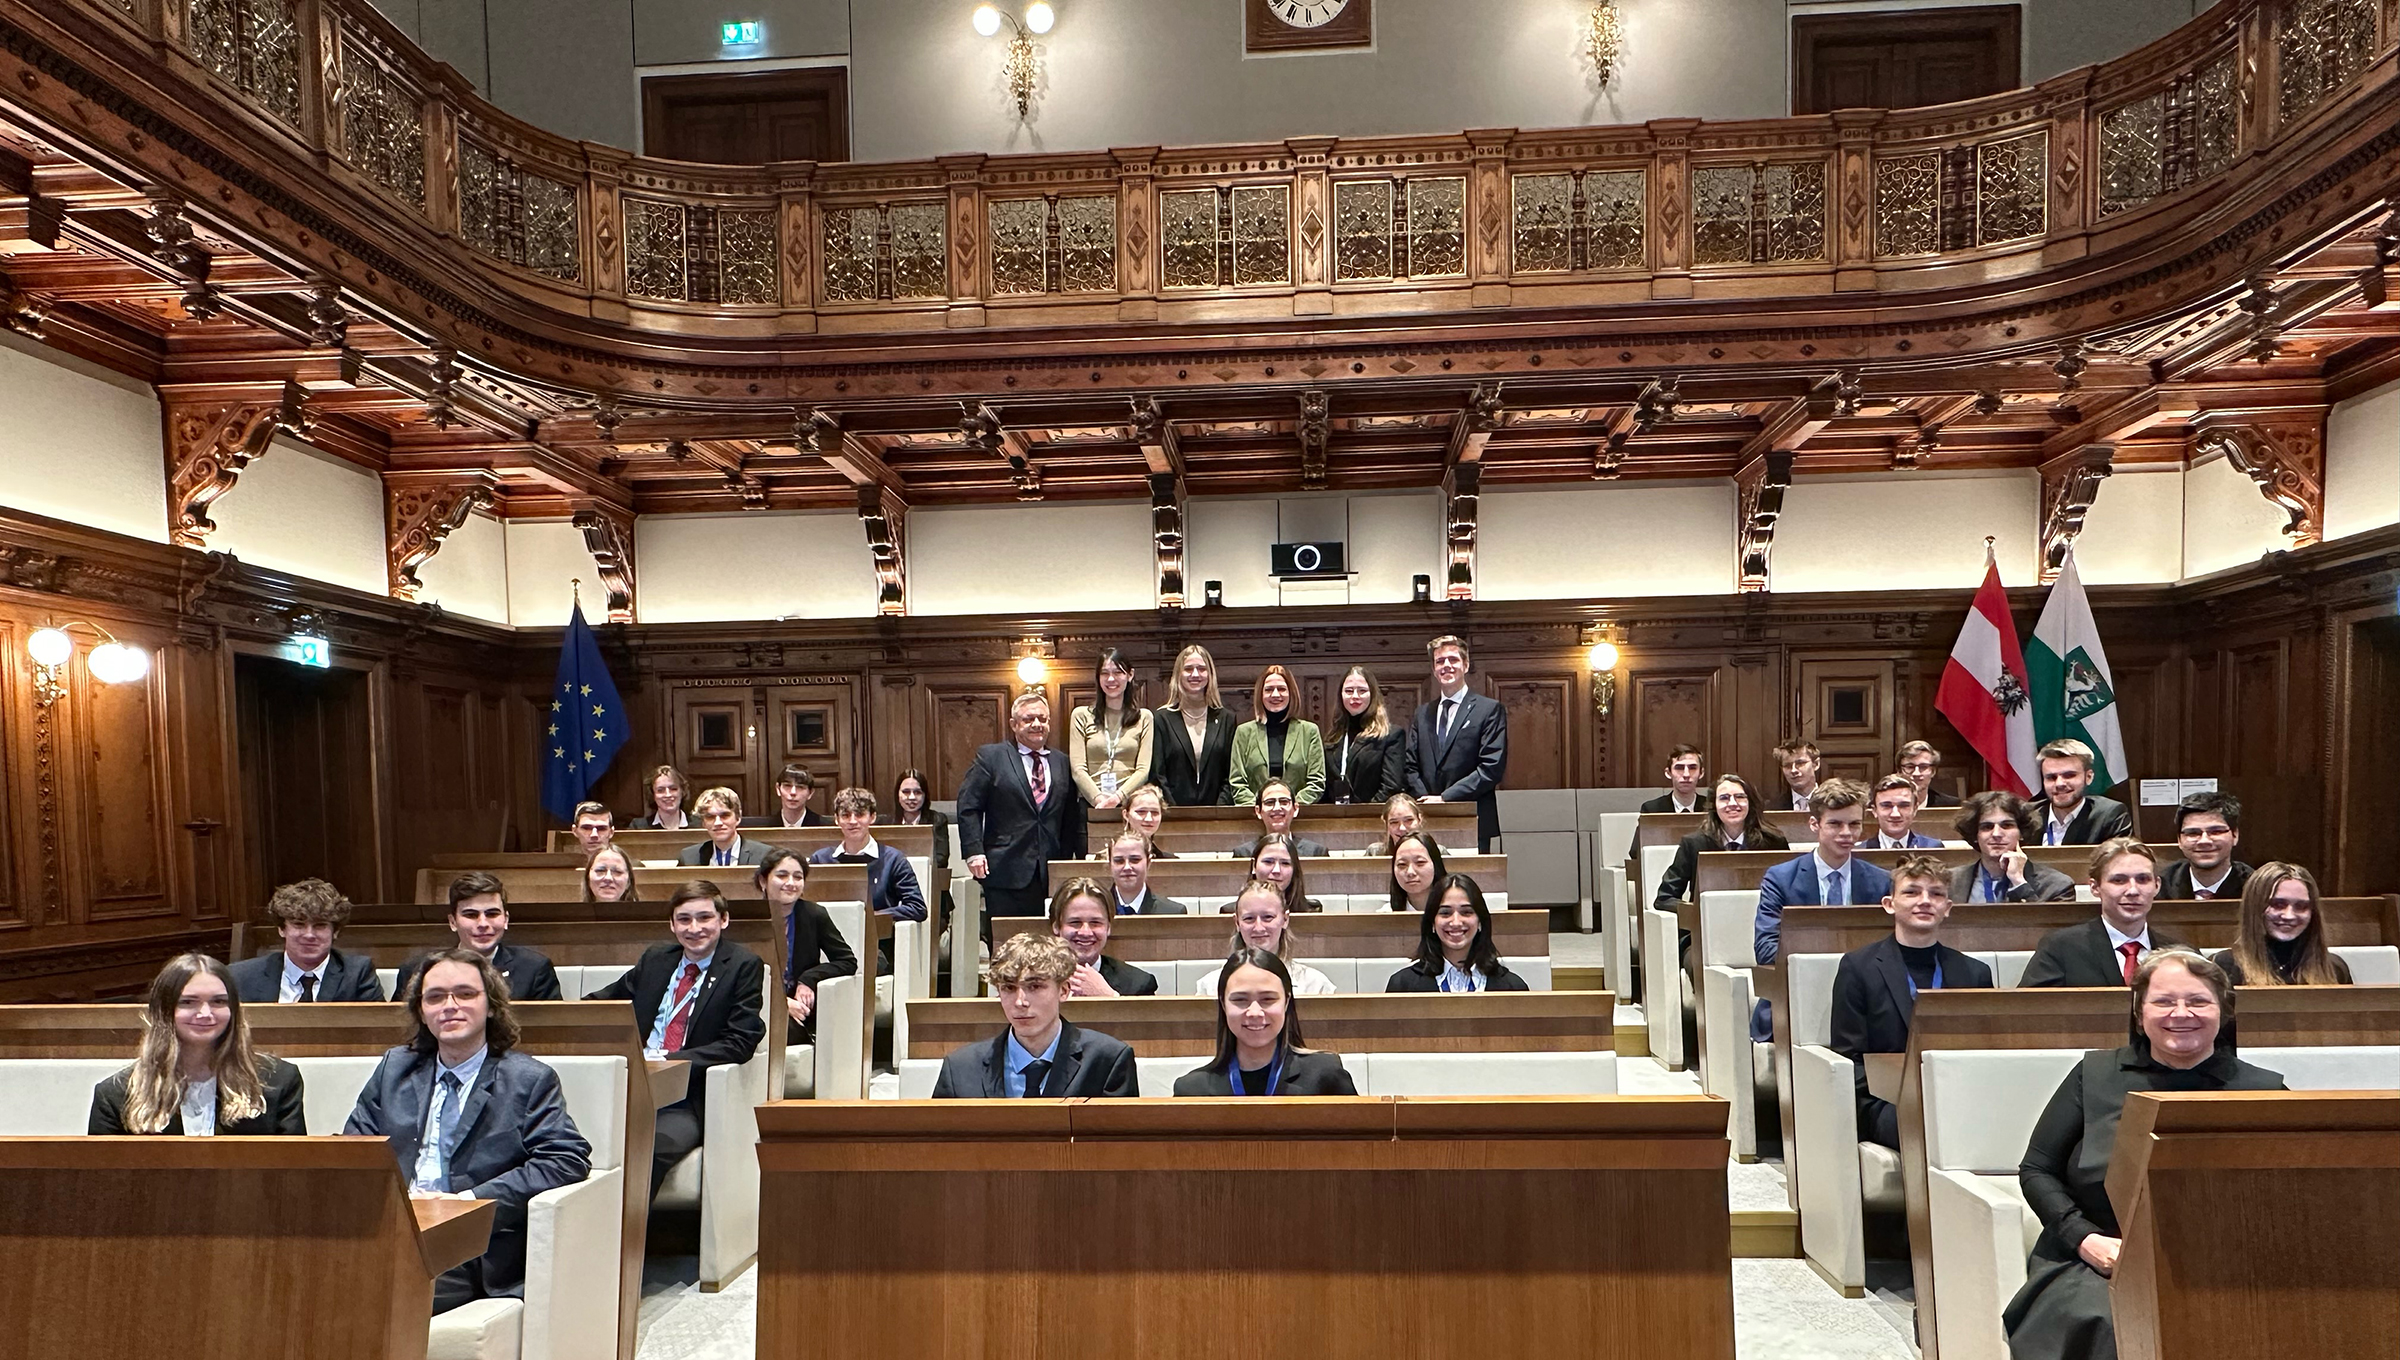 Am Samstag versammelten sich die Jungparlamentarier:innen des Model European Parliament im Gemeinderatssitzungssaal im Rathaus.